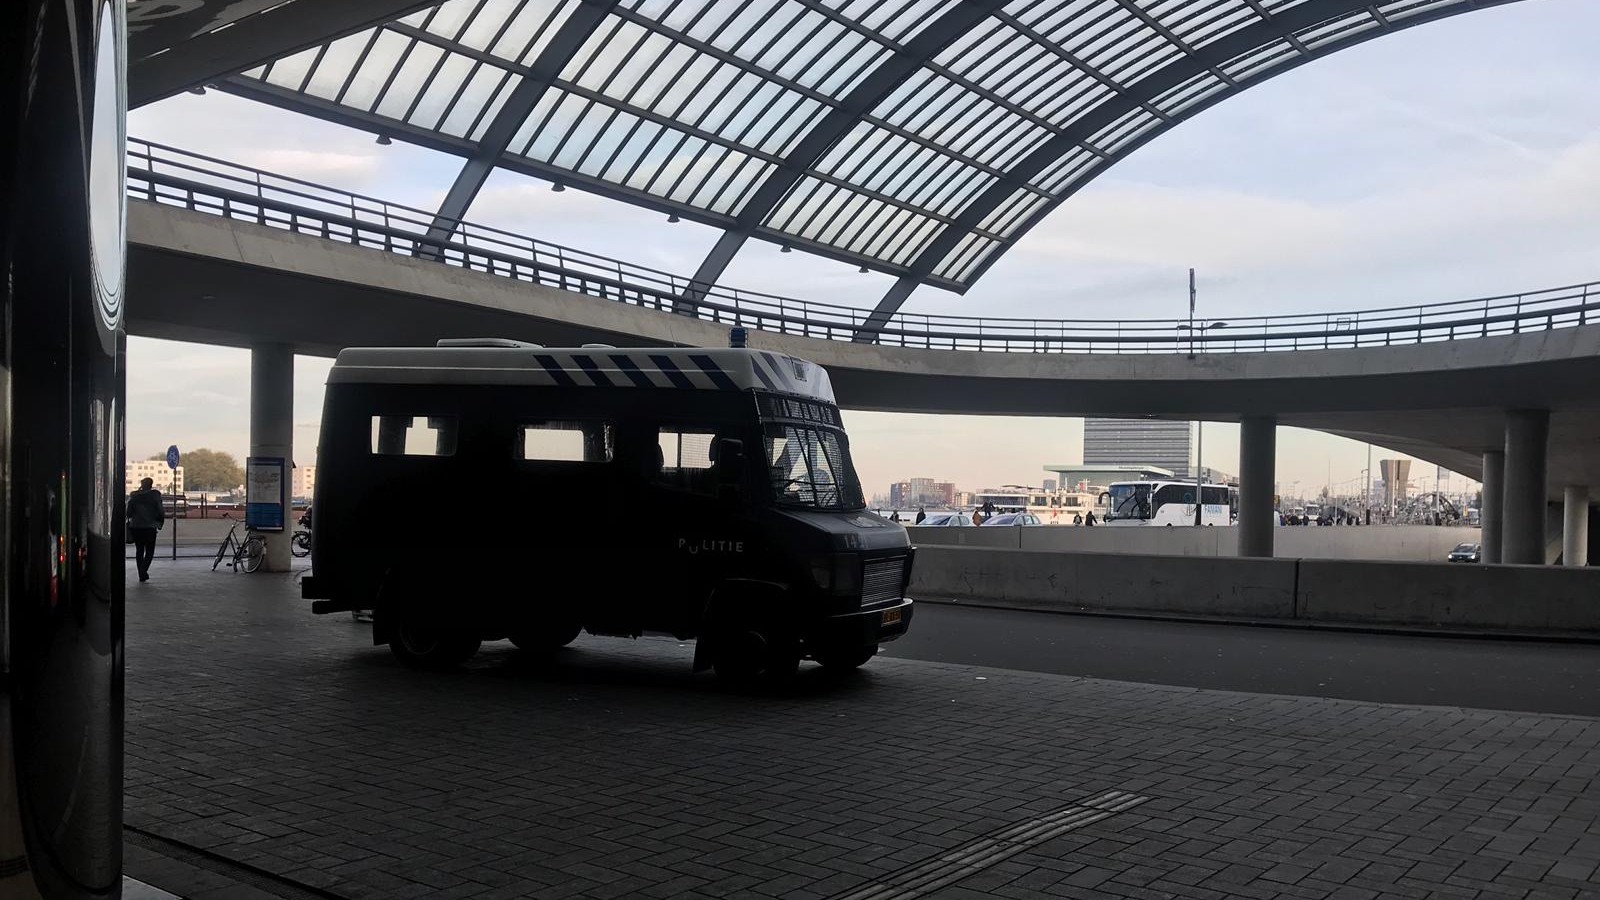 ME op Amsterdam Centraal